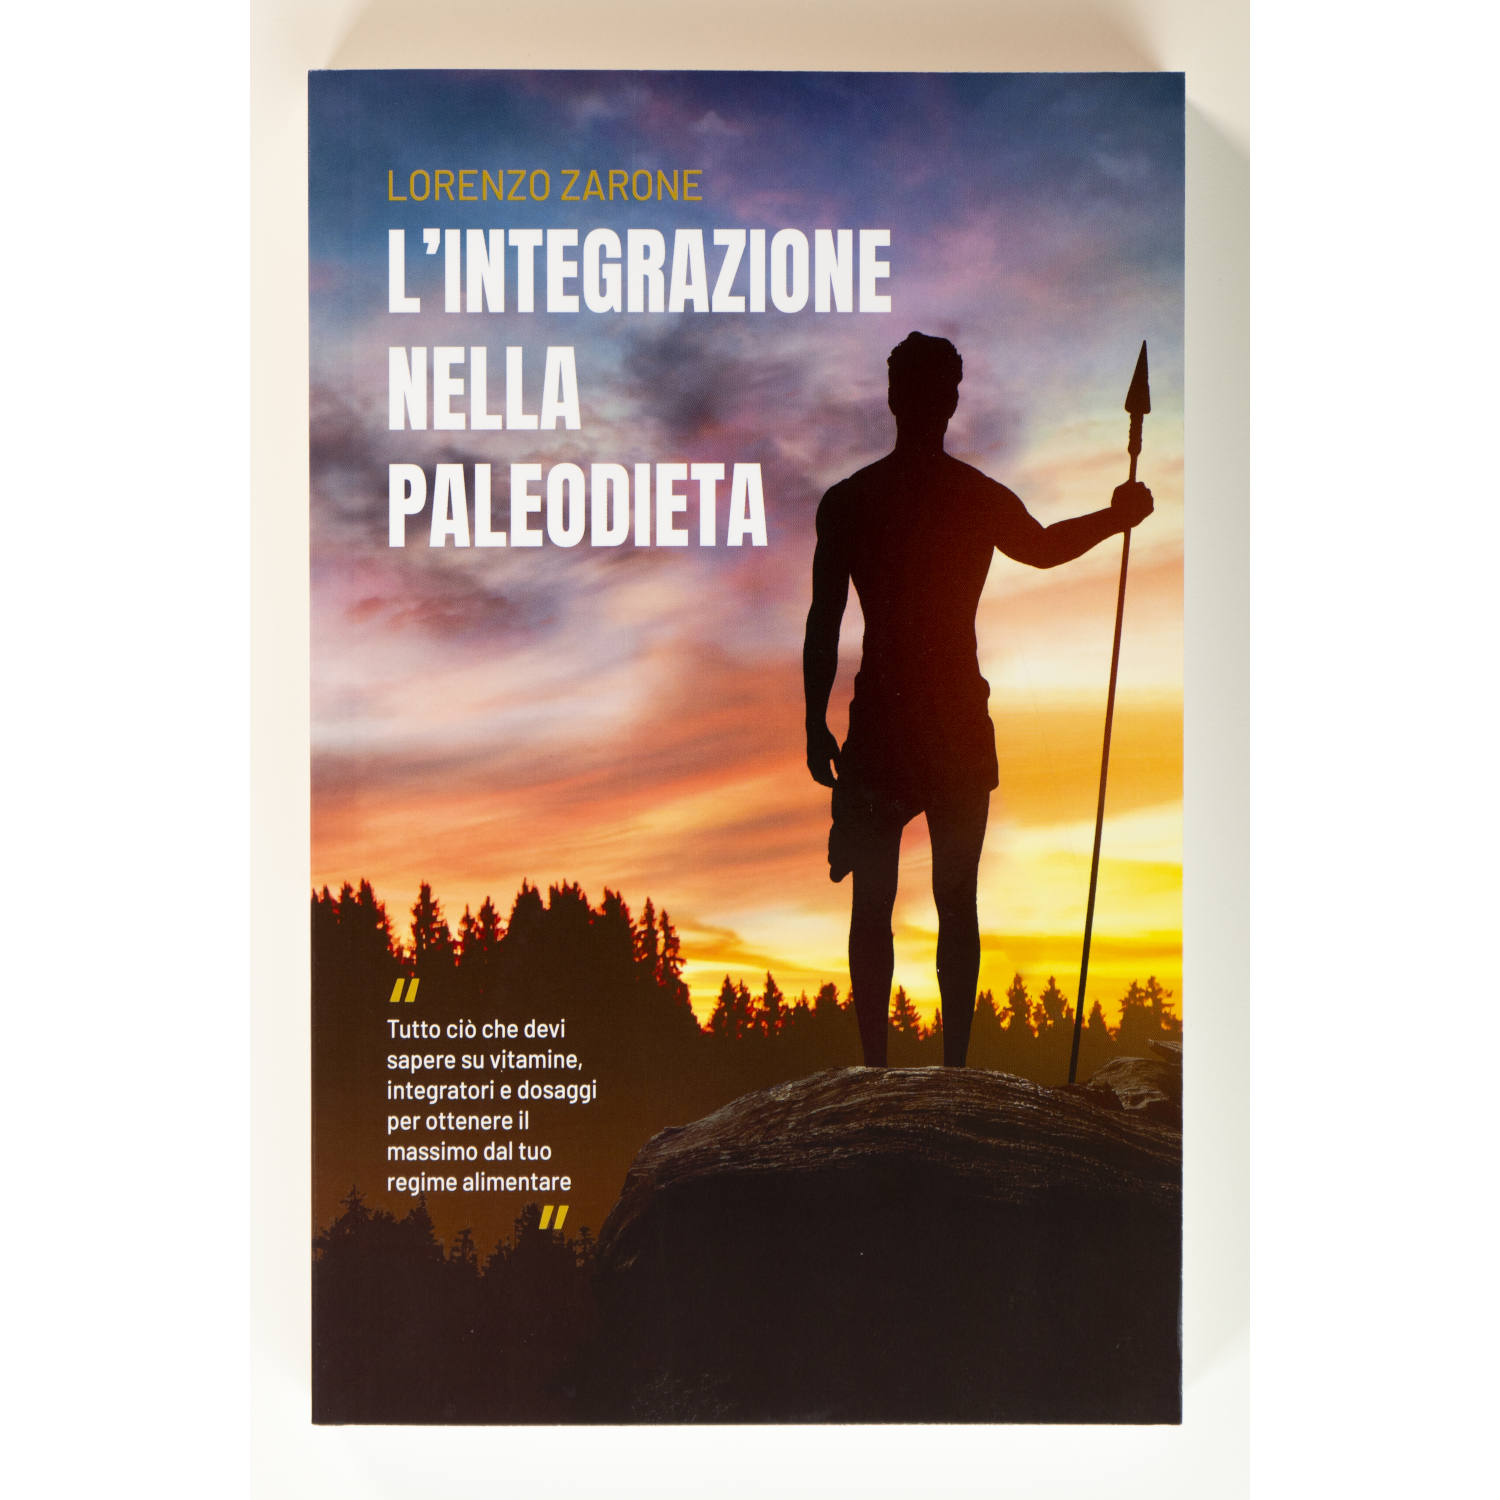 lorenzo-zarone-paleodieta-integrazione